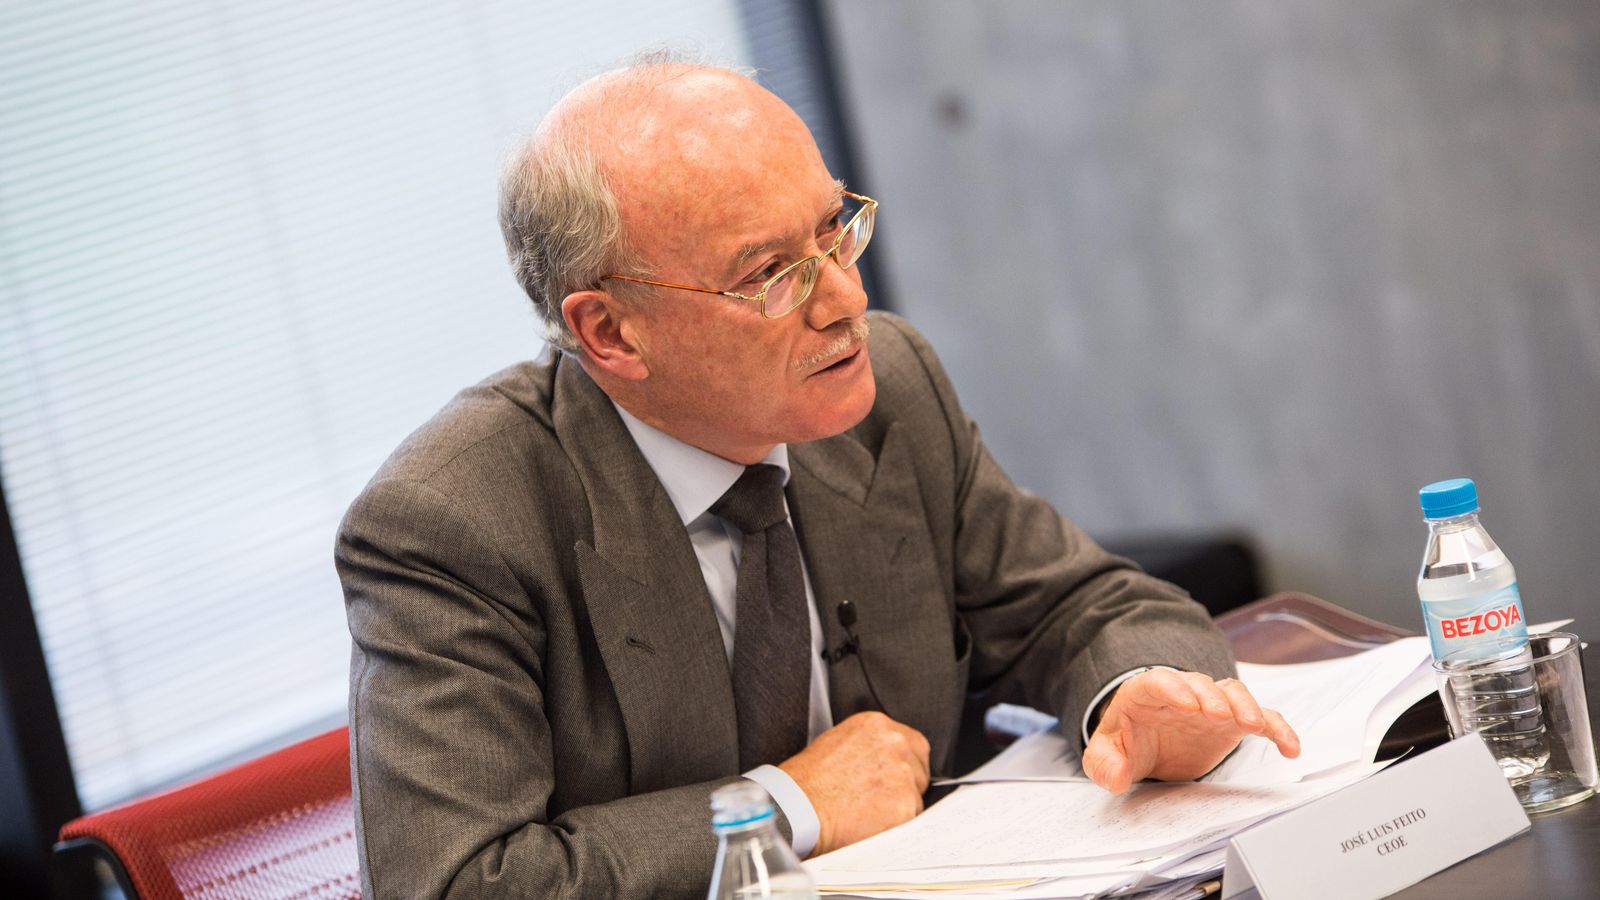 Foto: José Luis Feito, presidente del Instituto de Estudios Económicos. (EC)